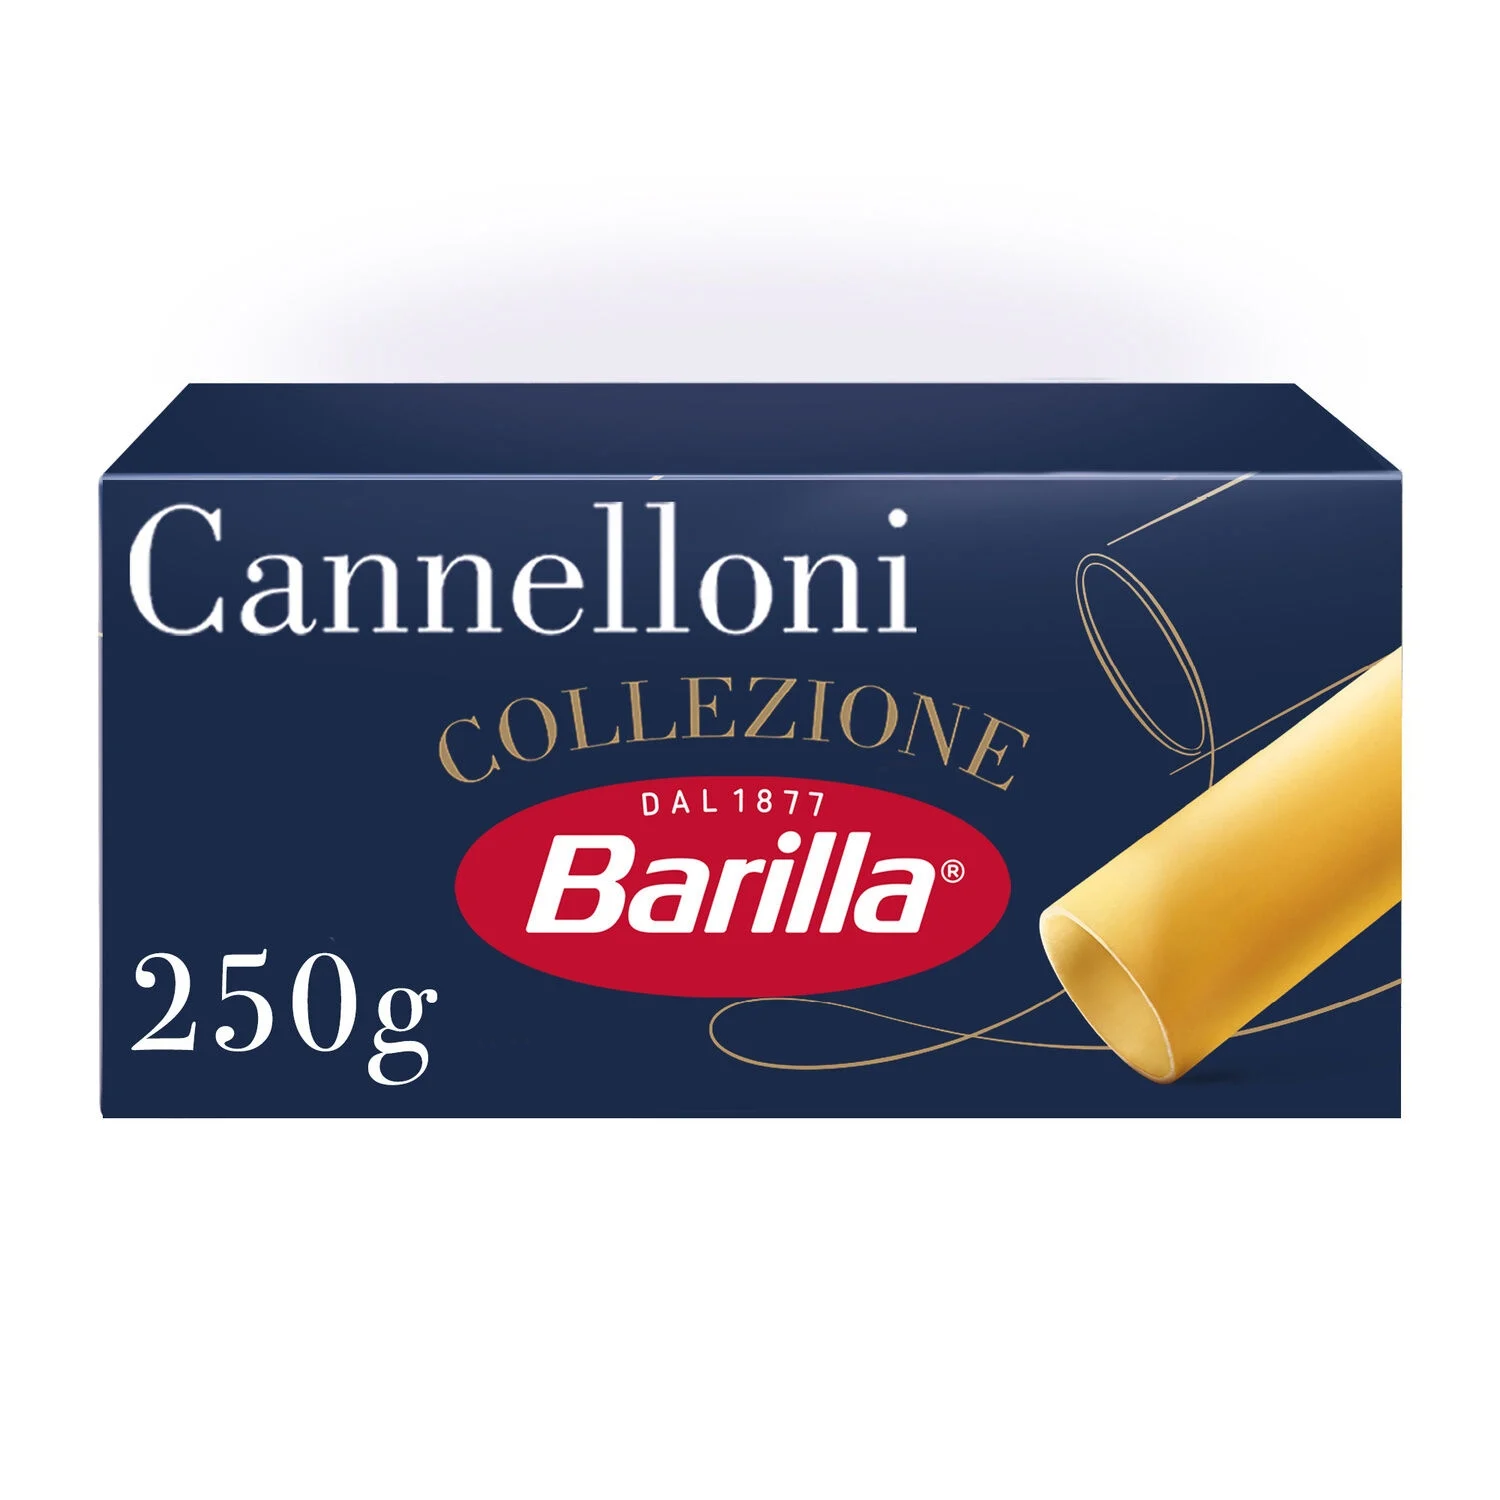 250g Barilla Cannelloni